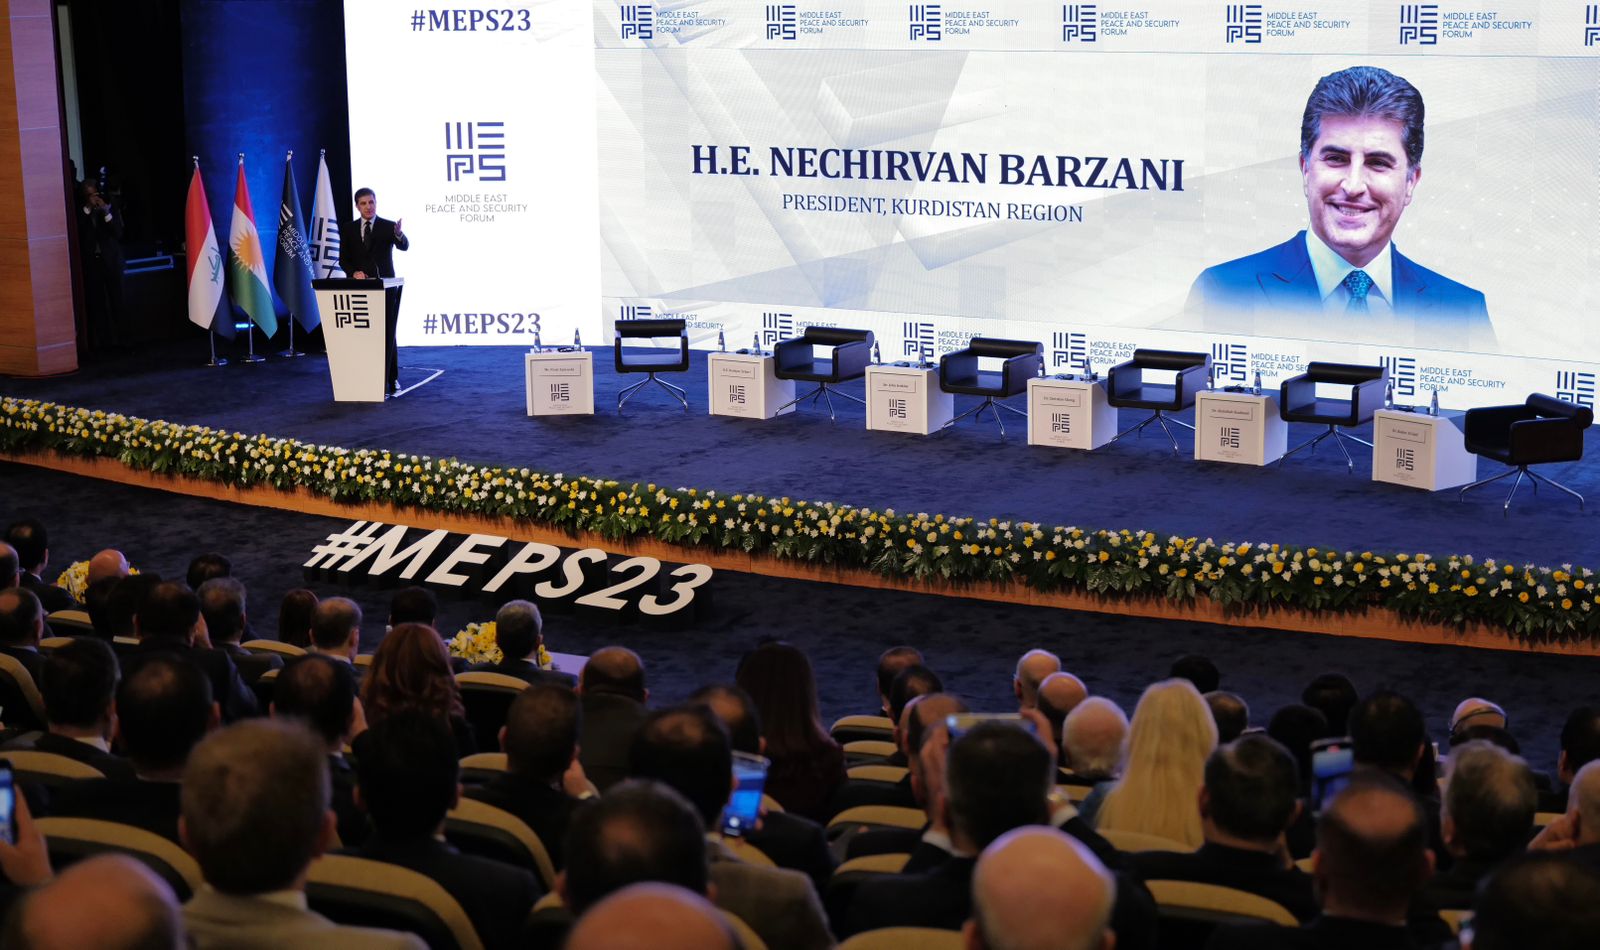 نيجيرفان بارزاني: لن نستسلم، وسنواصل إيجاد الحلول لجميع المشاكل بين بغداد وكوردستان